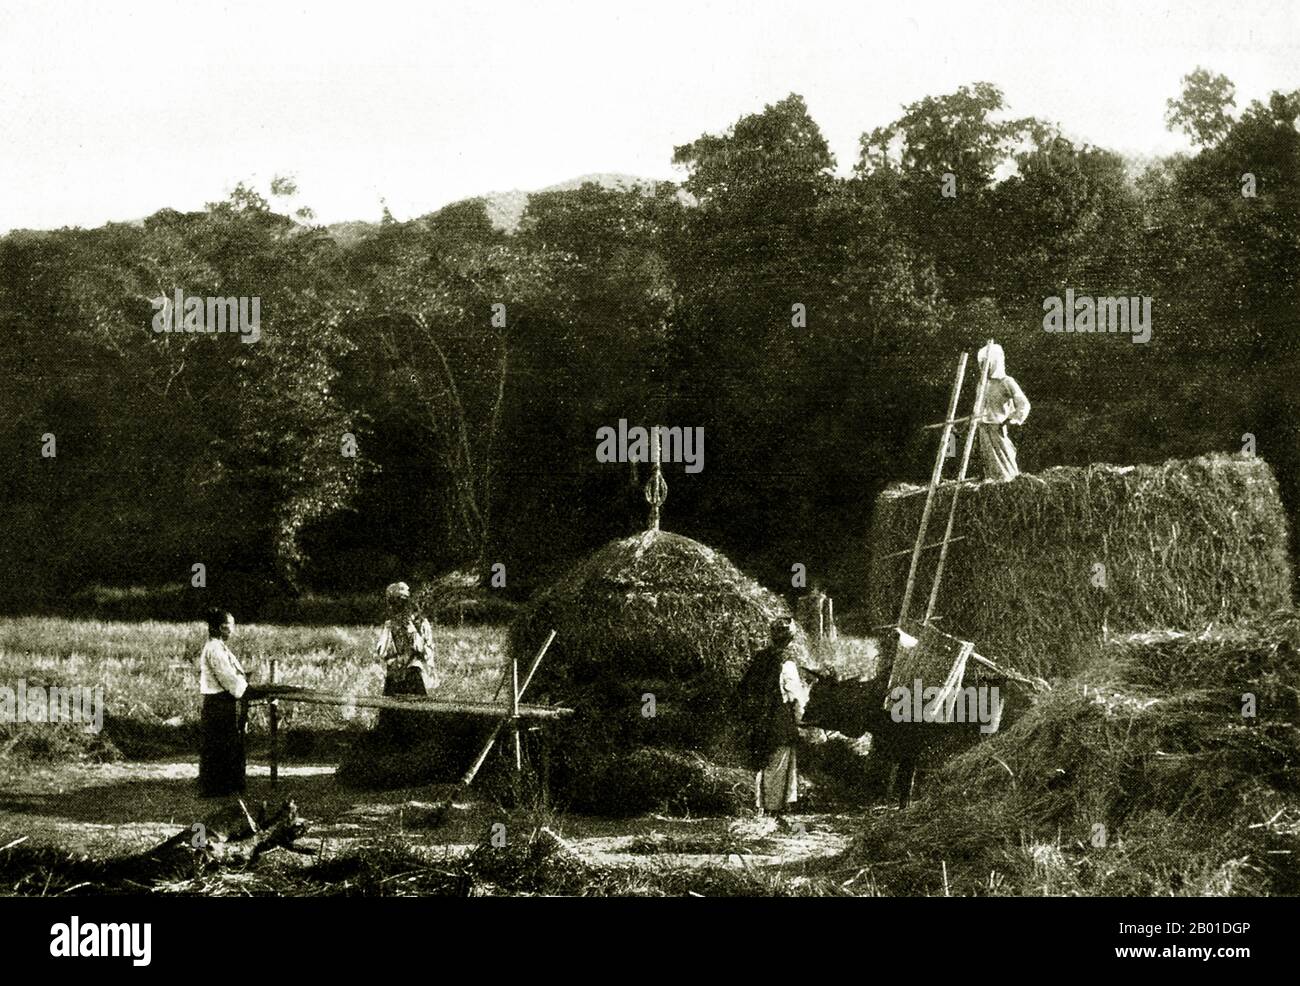 Birmania: Gli agricoltori di Shan trebbiano riso, c. 1892-1896. Situato a nord-est del paese, lo Stato Shan copre un quarto della massa terrestre della Birmania. Tradizionalmente è stato separato in principati ed è principalmente composto da etnico Shan, Burman Pa-o, Intha, Taungyo, Danu, Popoli di Palaung e Kachin. Foto Stock